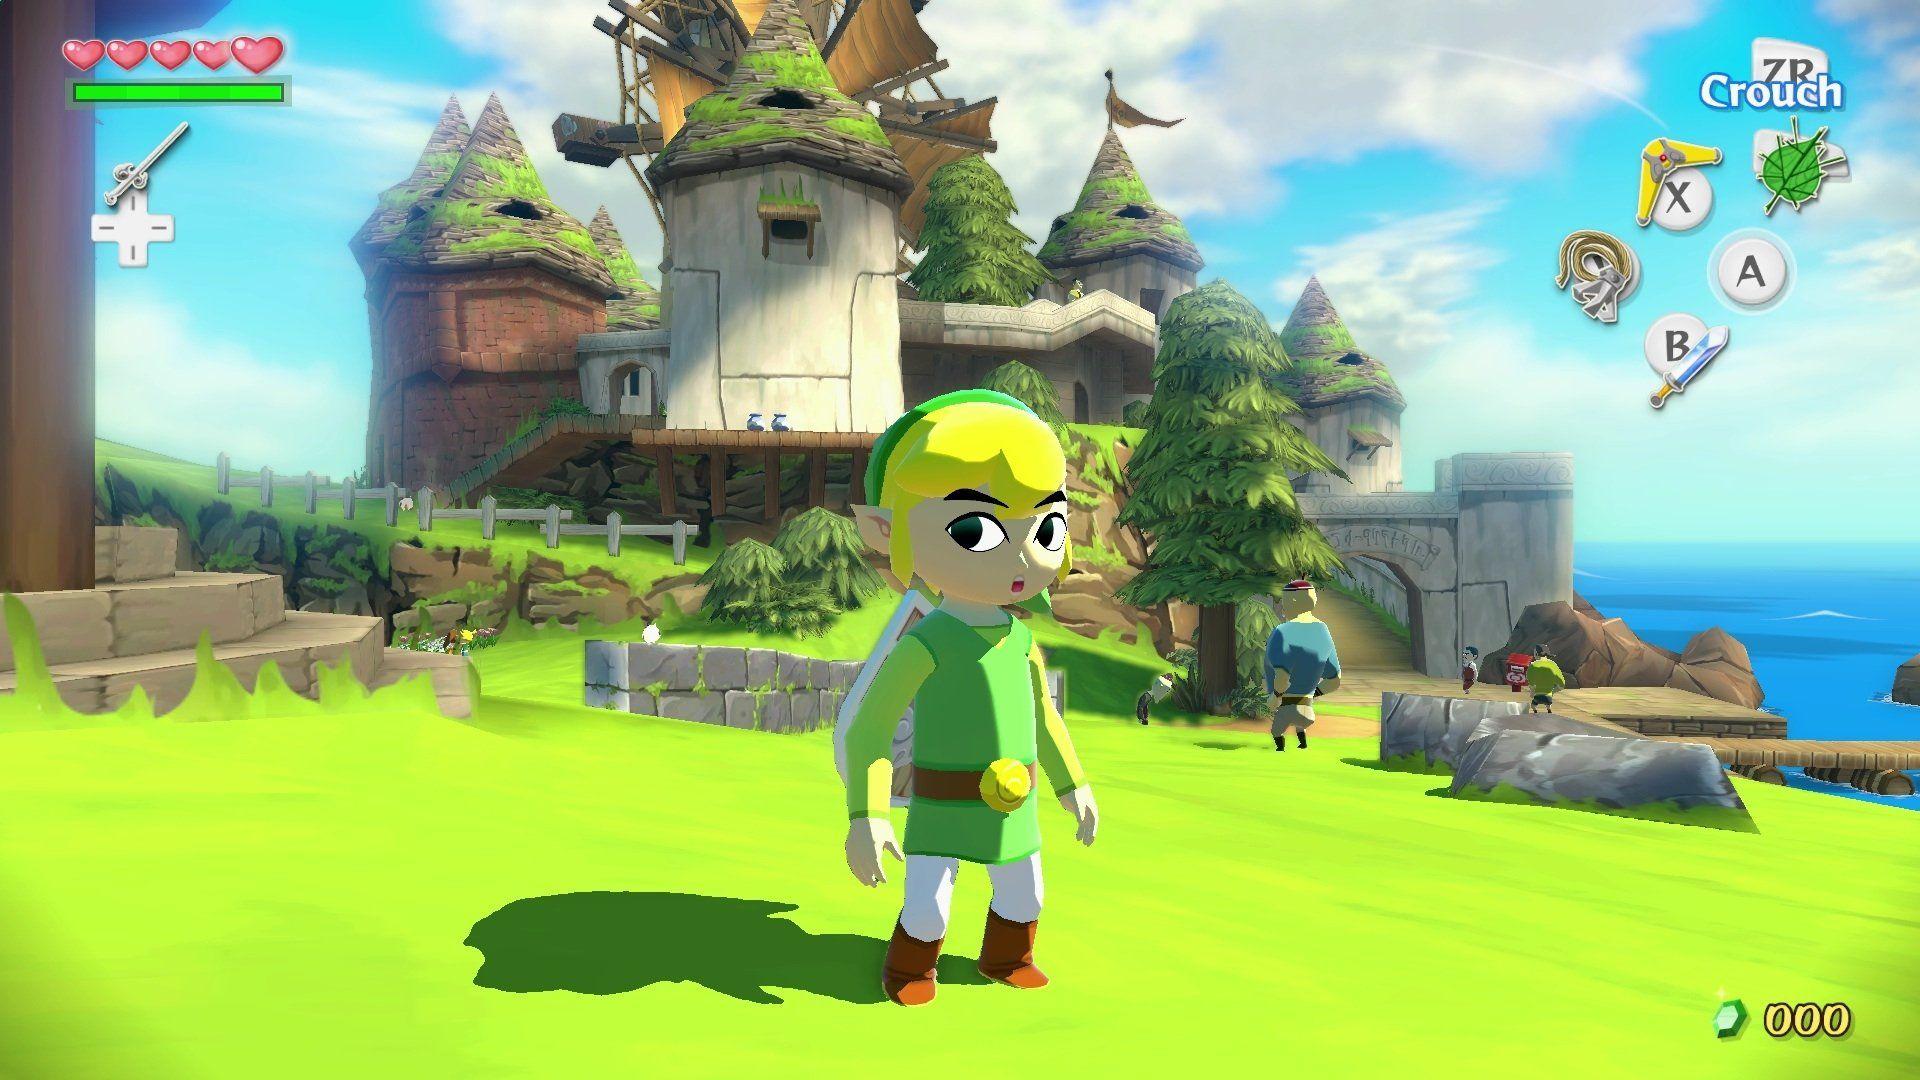 The Legend of Zelda: The Wind Waker HD HD Wallpaper